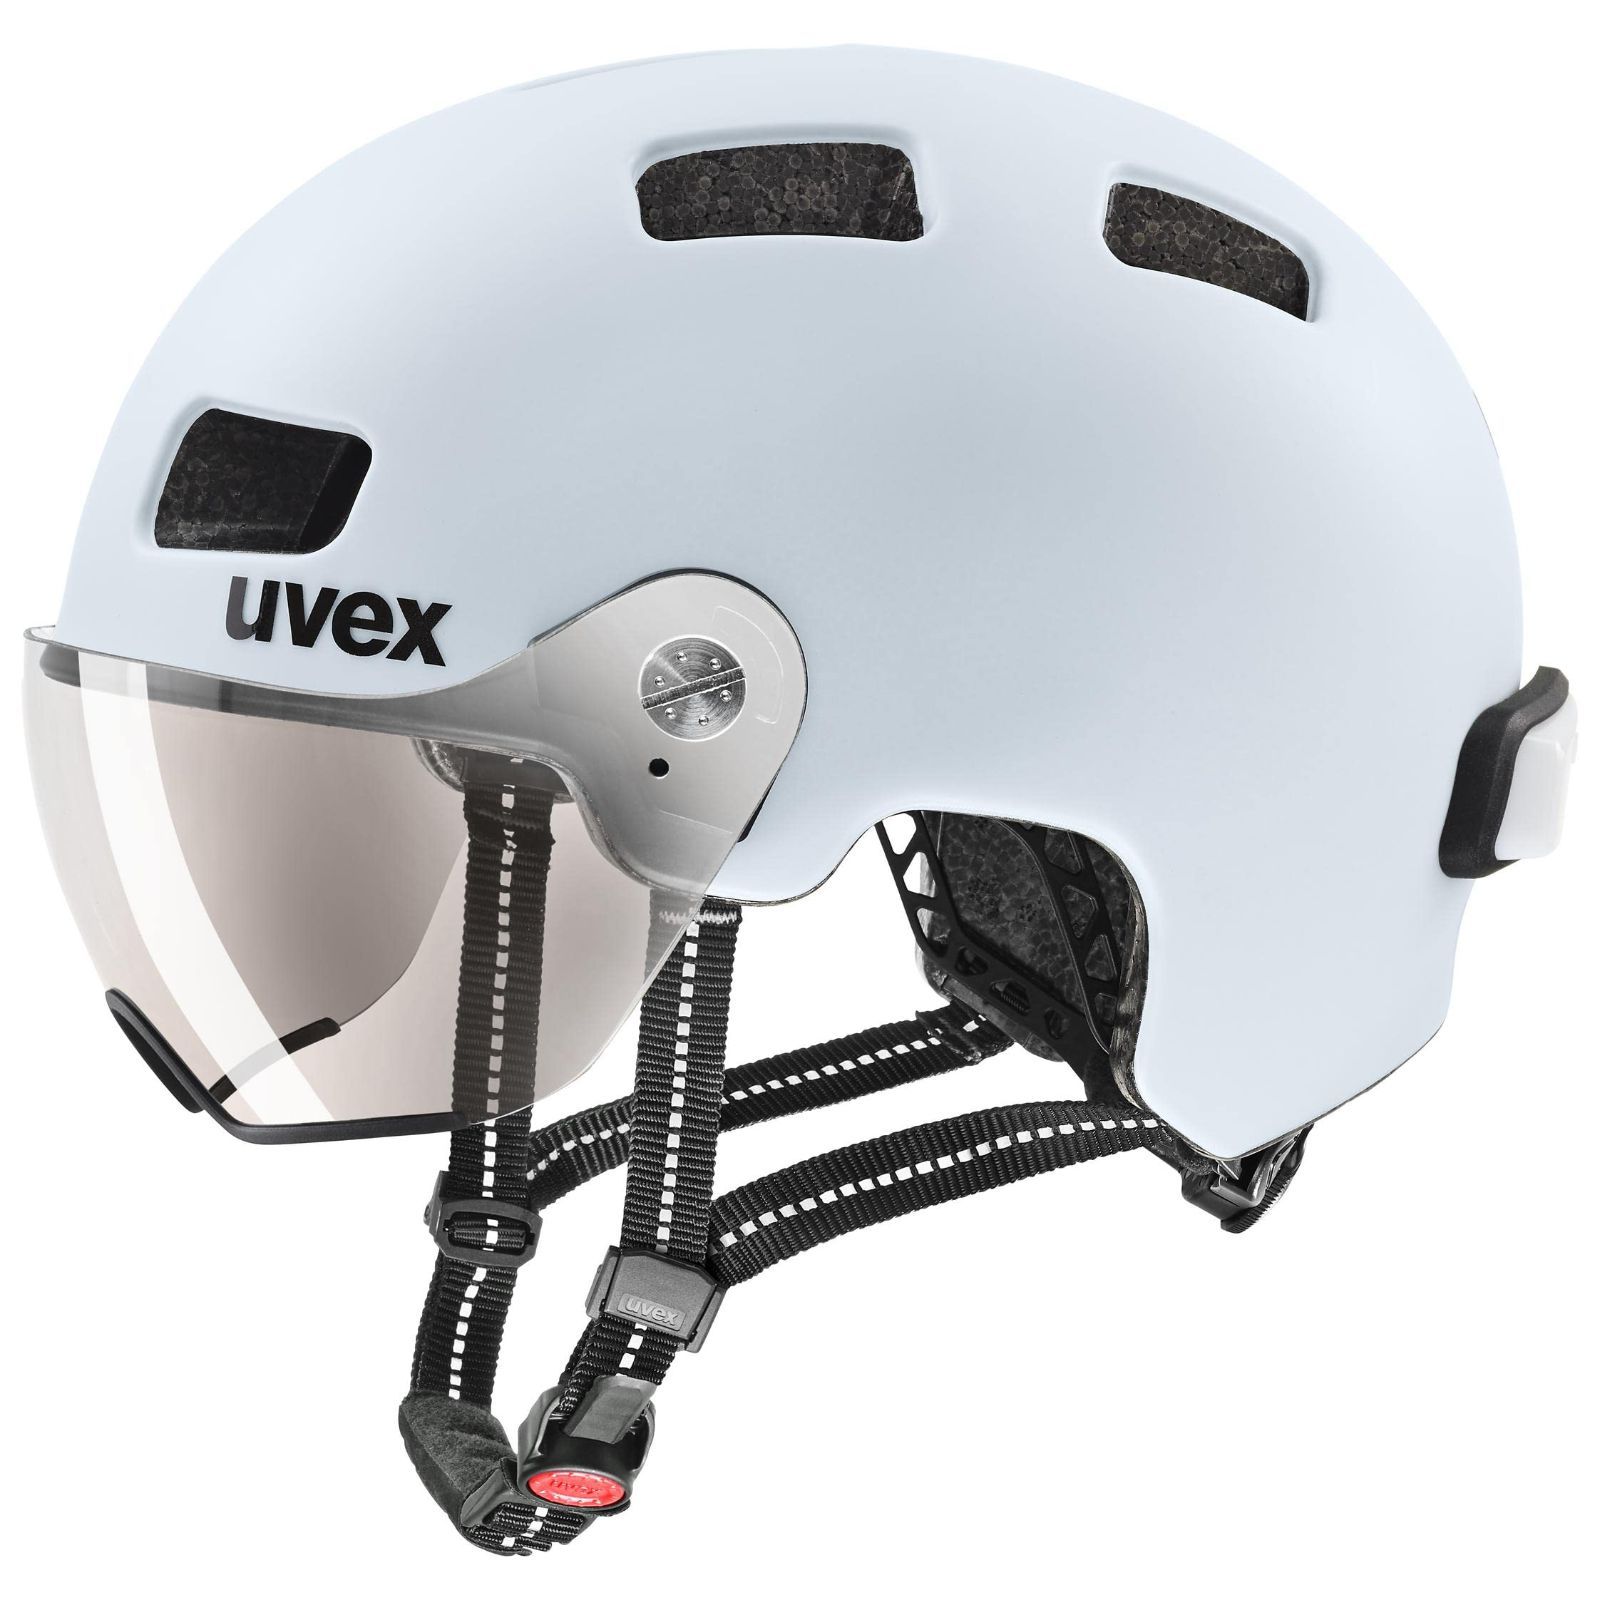 一流の品質 【特価セール】バイザー付き LEDライト付属 自転車ヘルメット ドイツ製 rush uvex(ウベックス) visor 